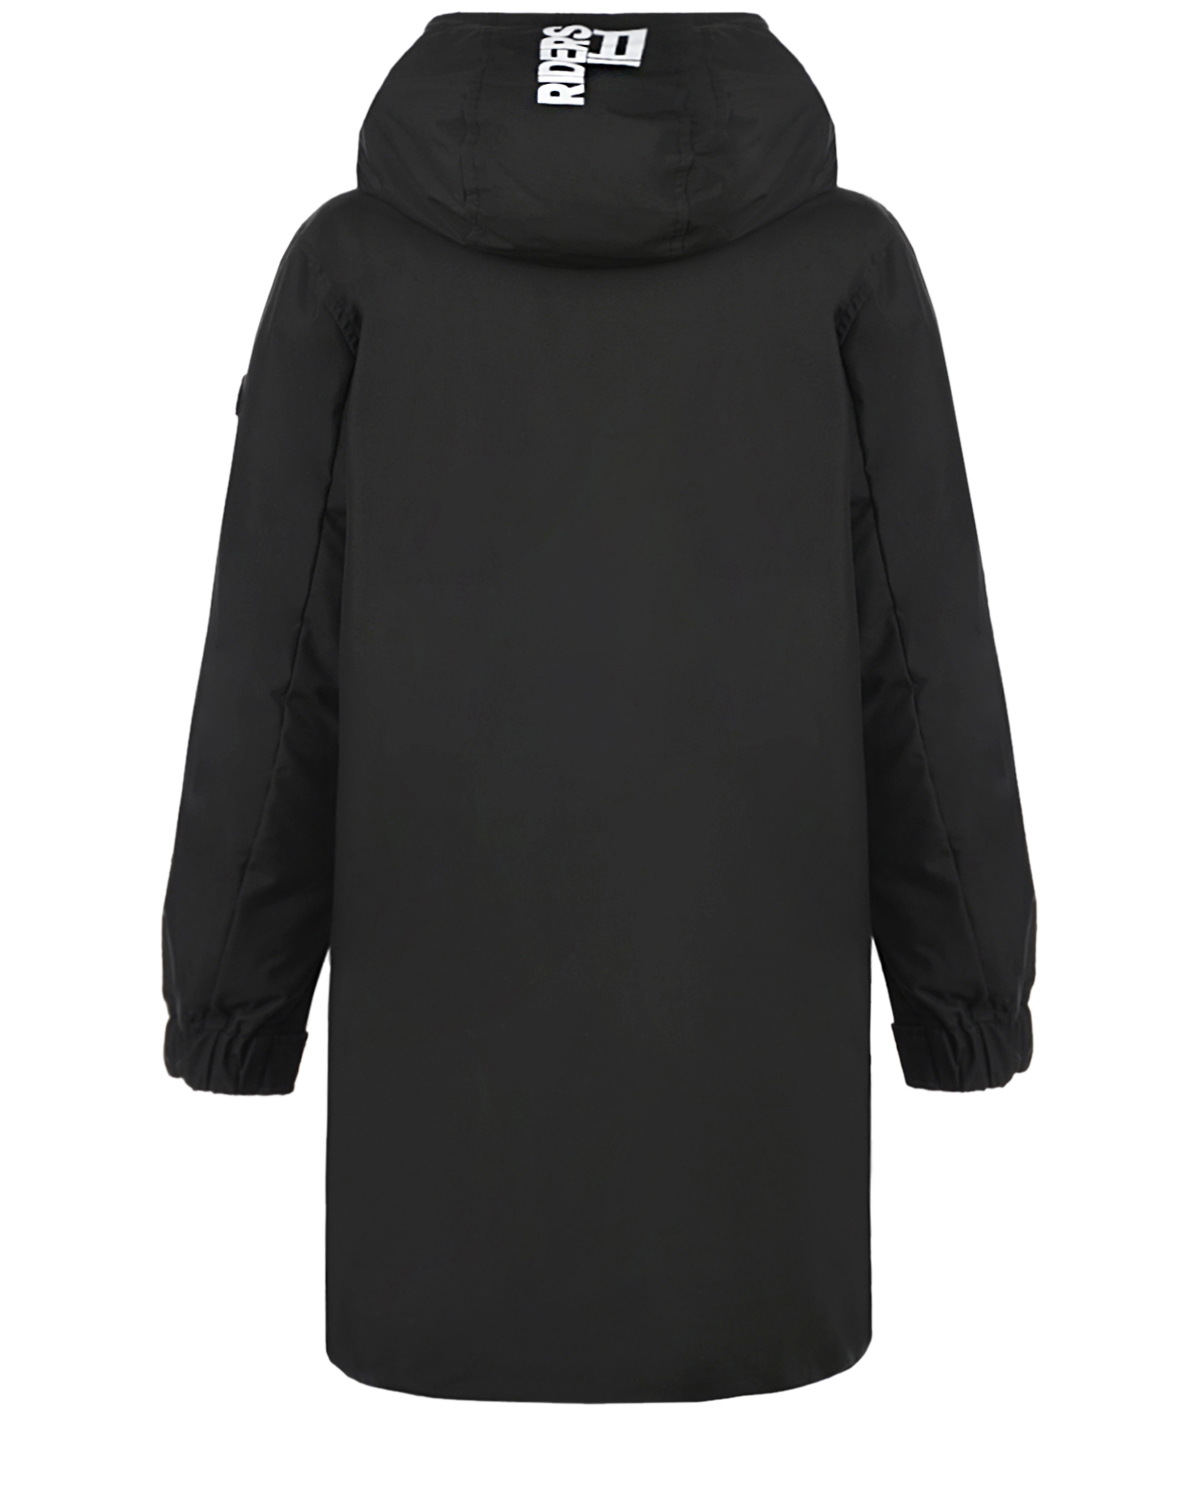 Черная куртка с принтом "Troublemaker" AI RIDERS ON THE STORM детская, размер 128, цвет черный - фото 2